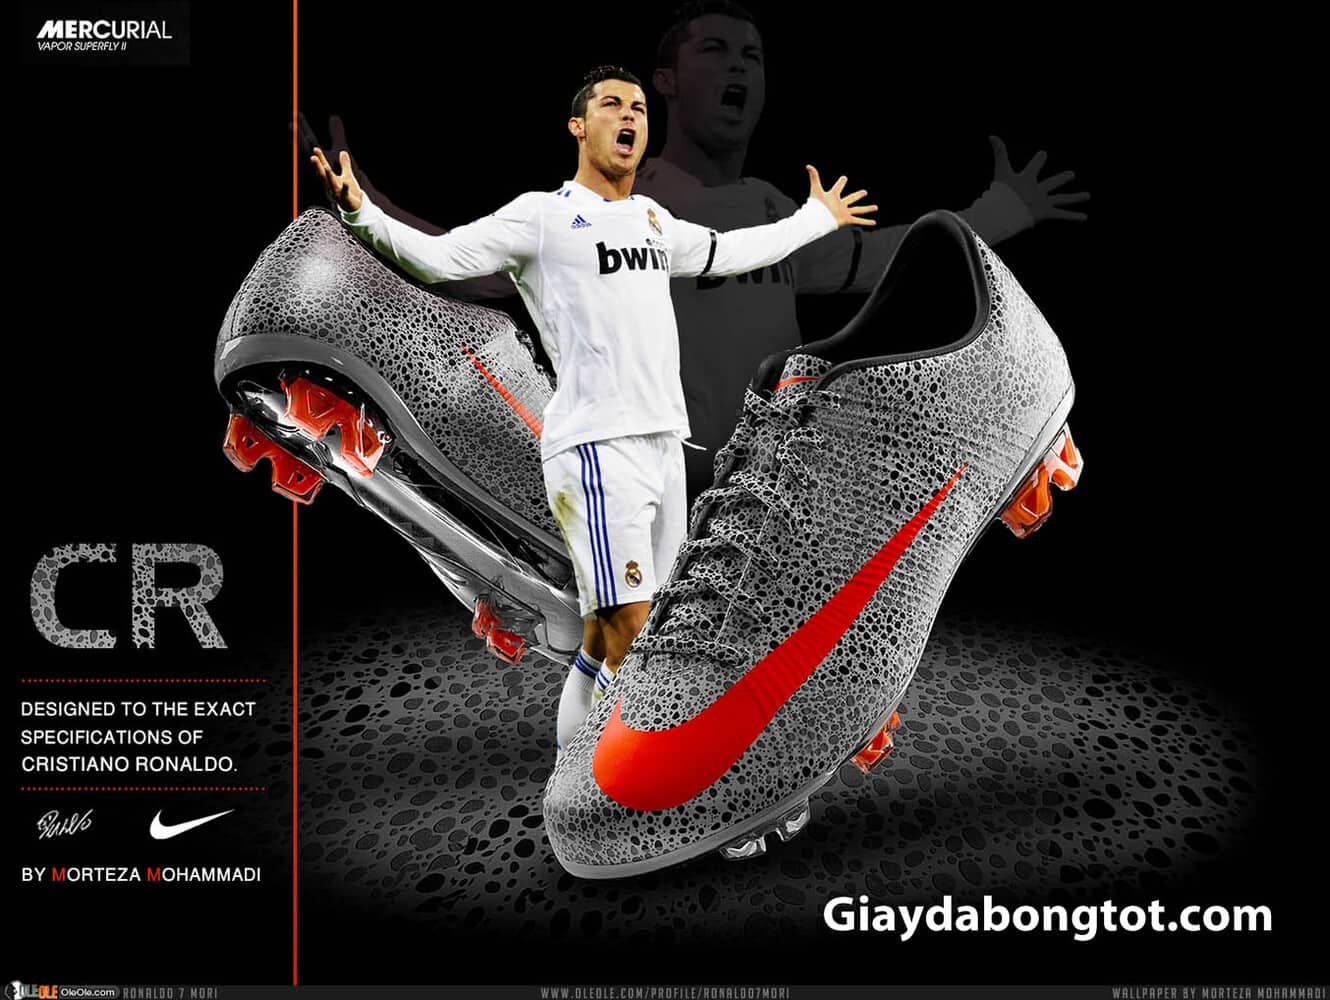 Các đốm trắng trên Nike Mercurial LVL UP được lấy ý tưởng từ mẫu giày Nike CR7 năm 2010 cũ của Ronaldo